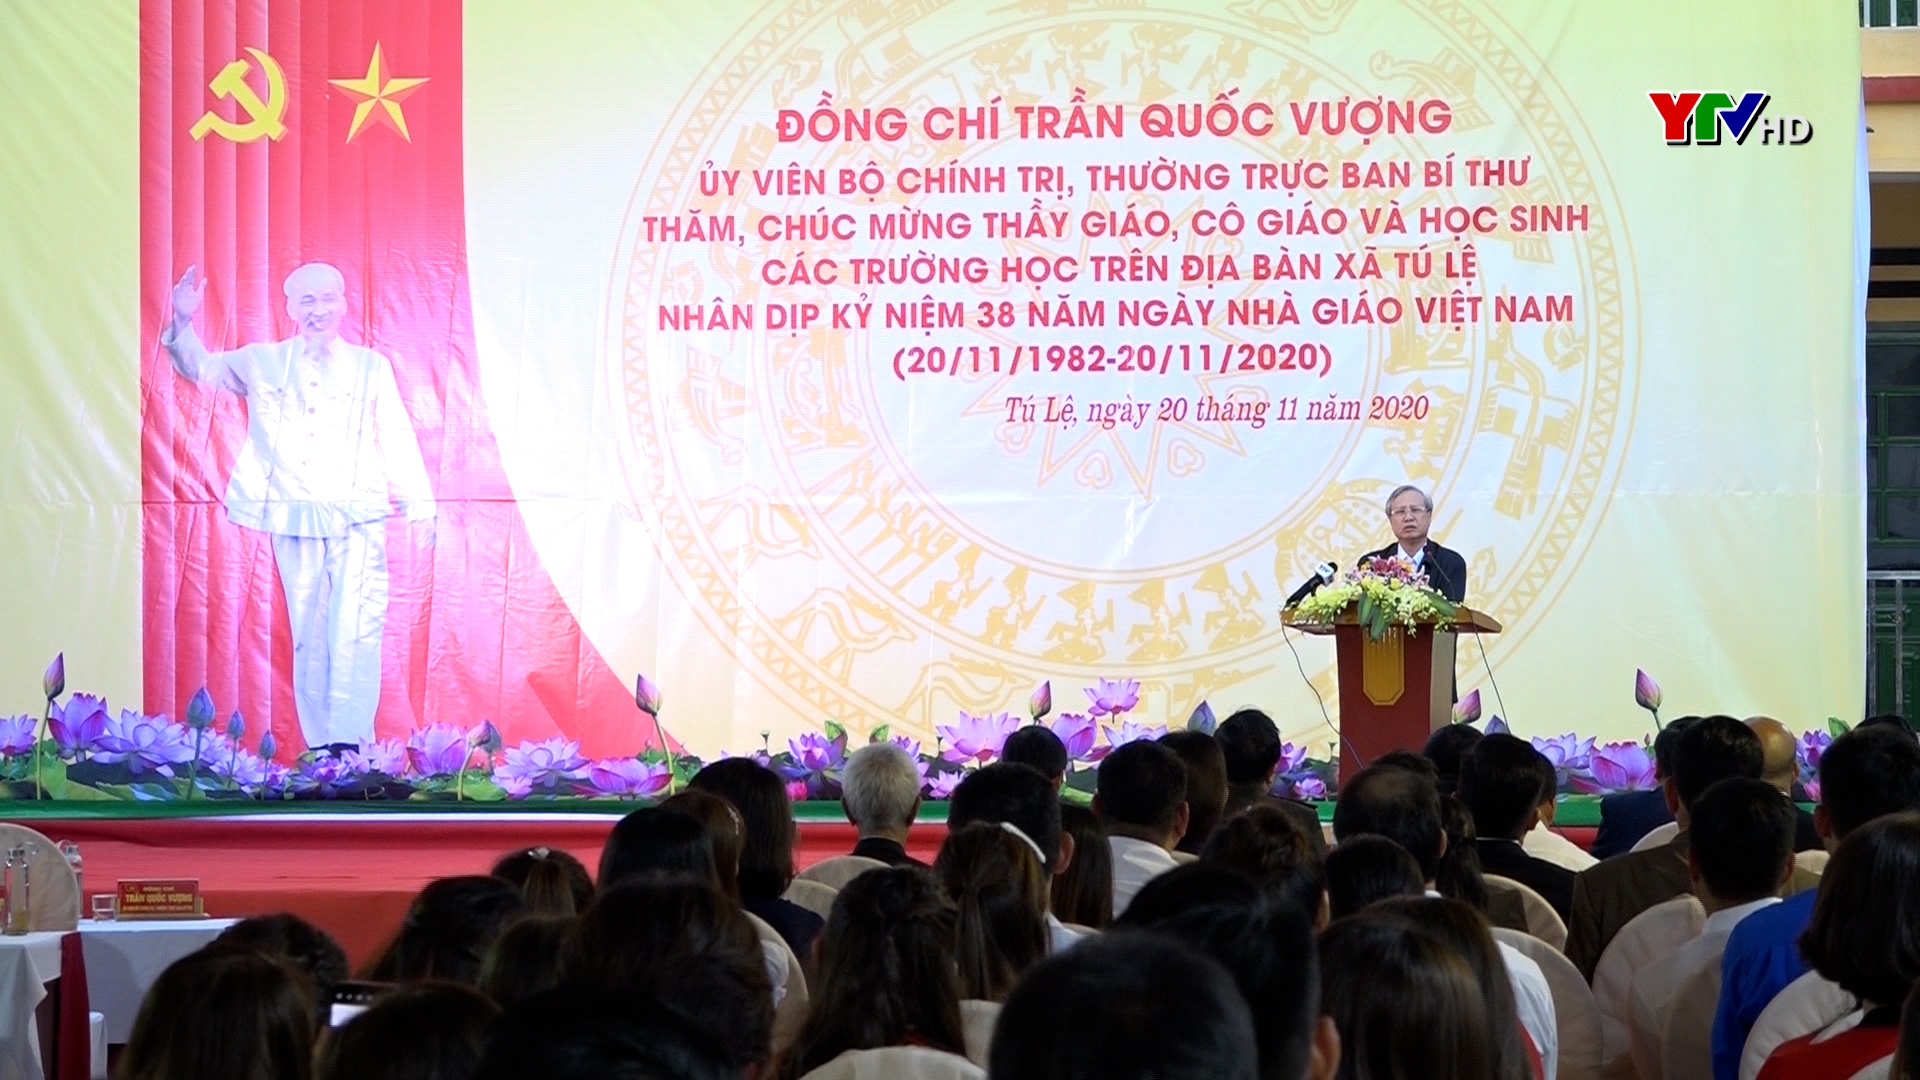 Đồng chí Thường trực Ban Bí thư Trần Quốc Vượng chúc mừng các trường trên địa bàn xã Tú Lệ, huyện Văn Chấn nhân ngày Nhà giáo Việt Nam